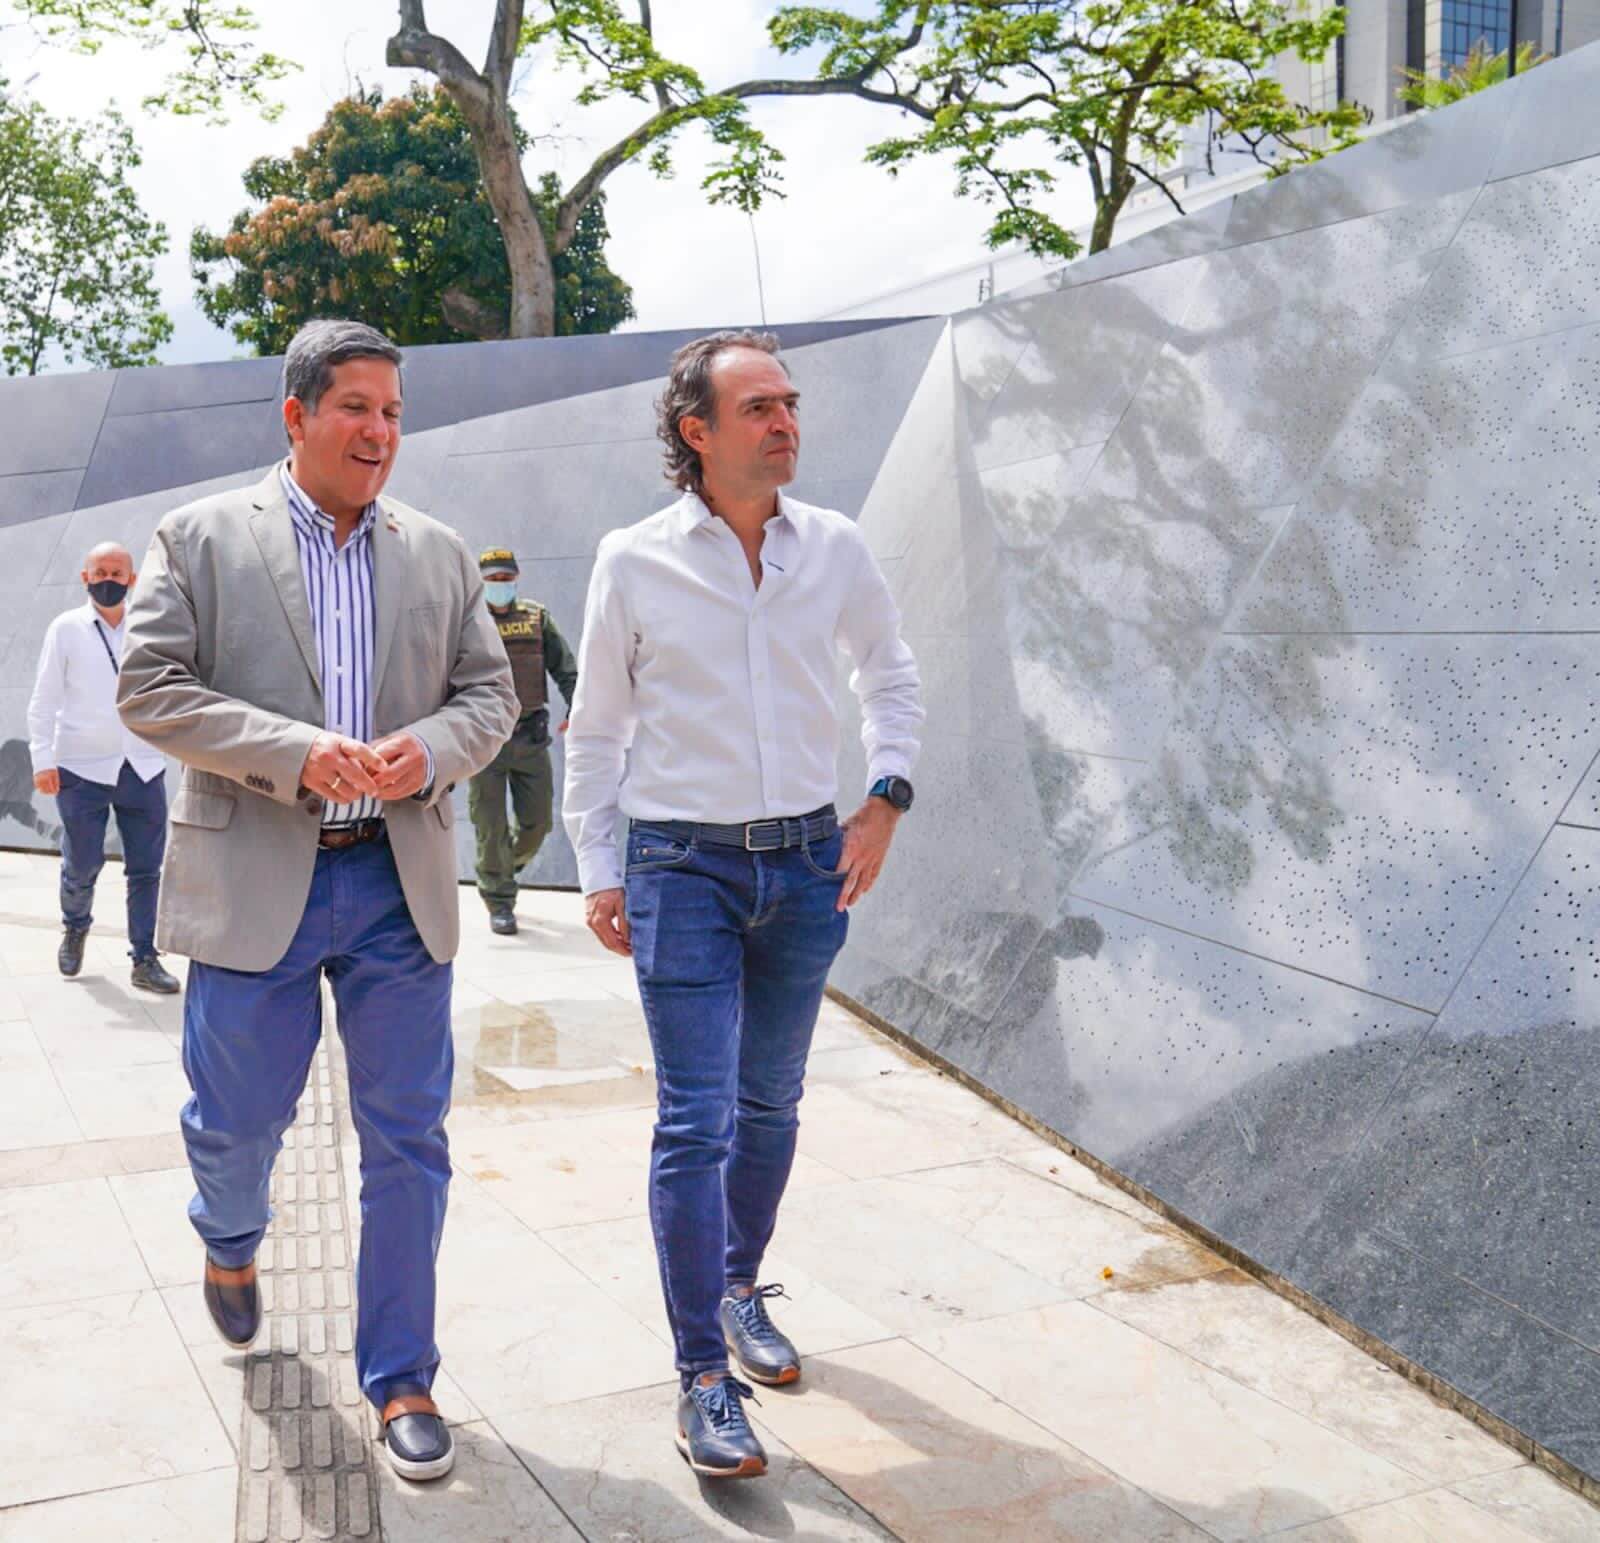 Francia Márquez y Lara Sánchez adelantan agenda política en Medellín